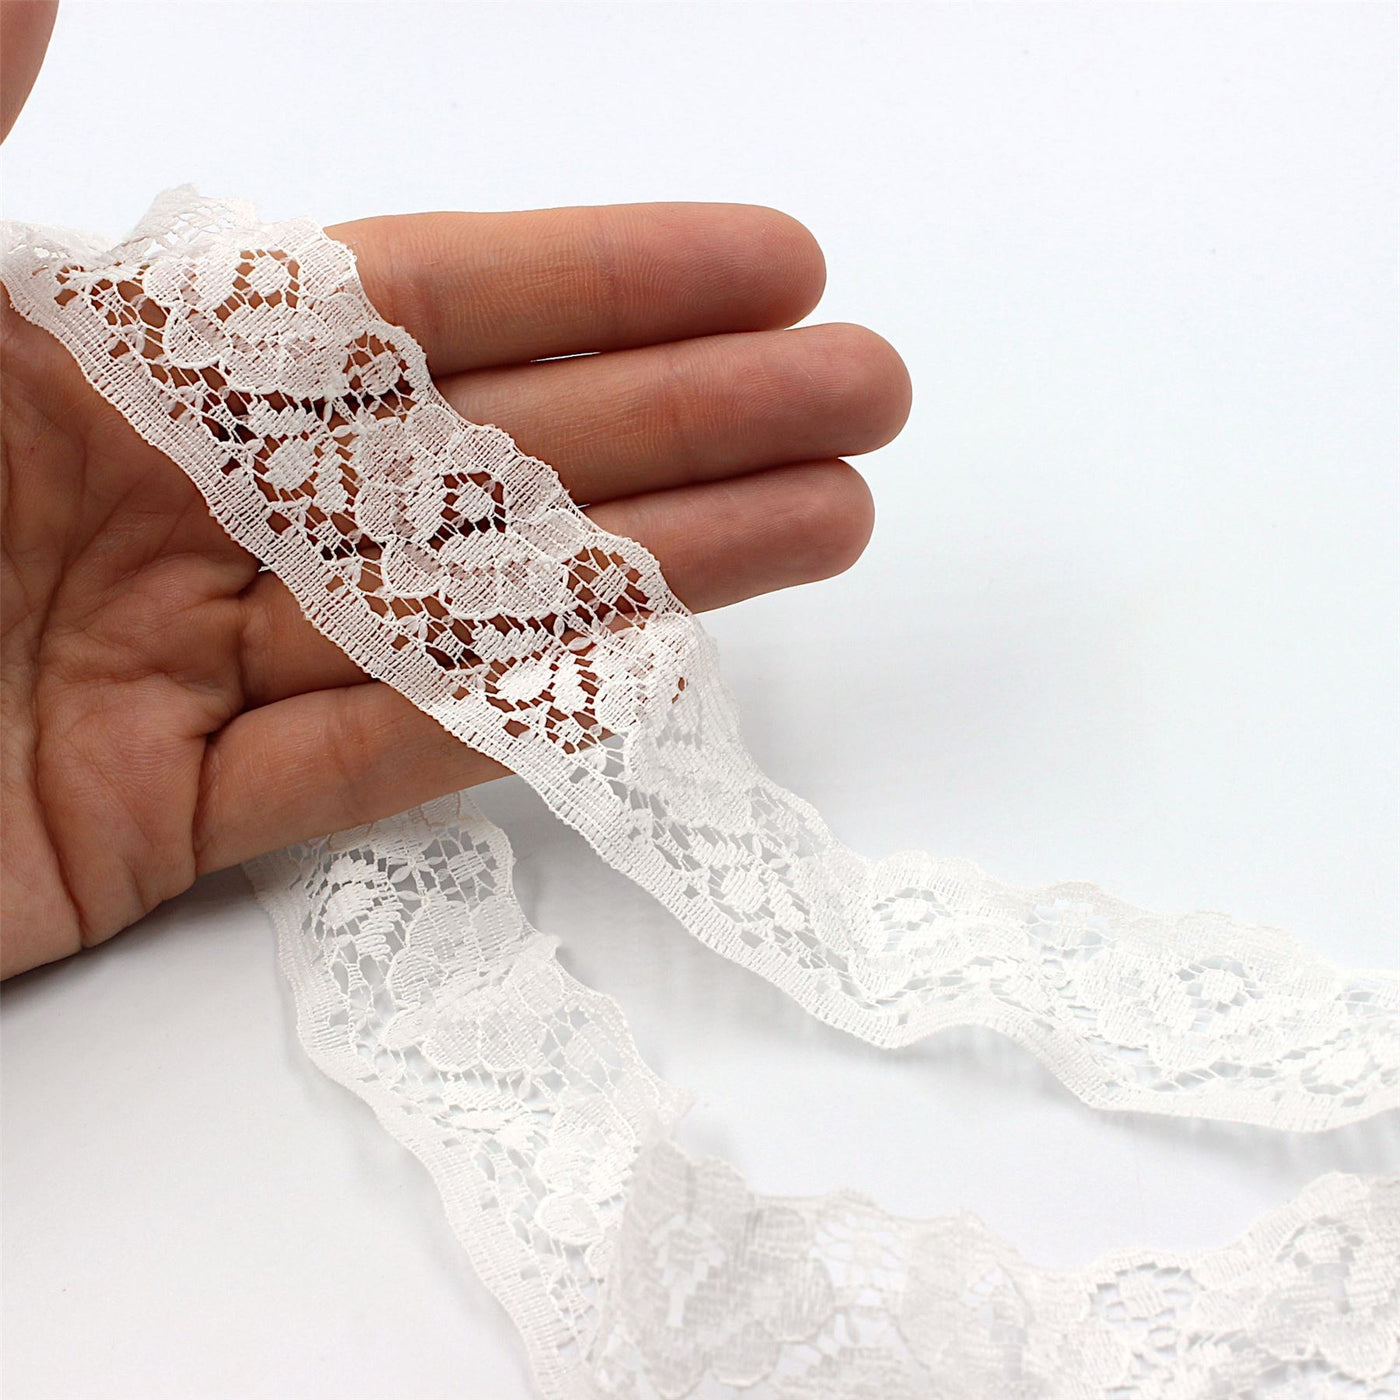 1783 - 30mm White Ribbon slot cotton lace